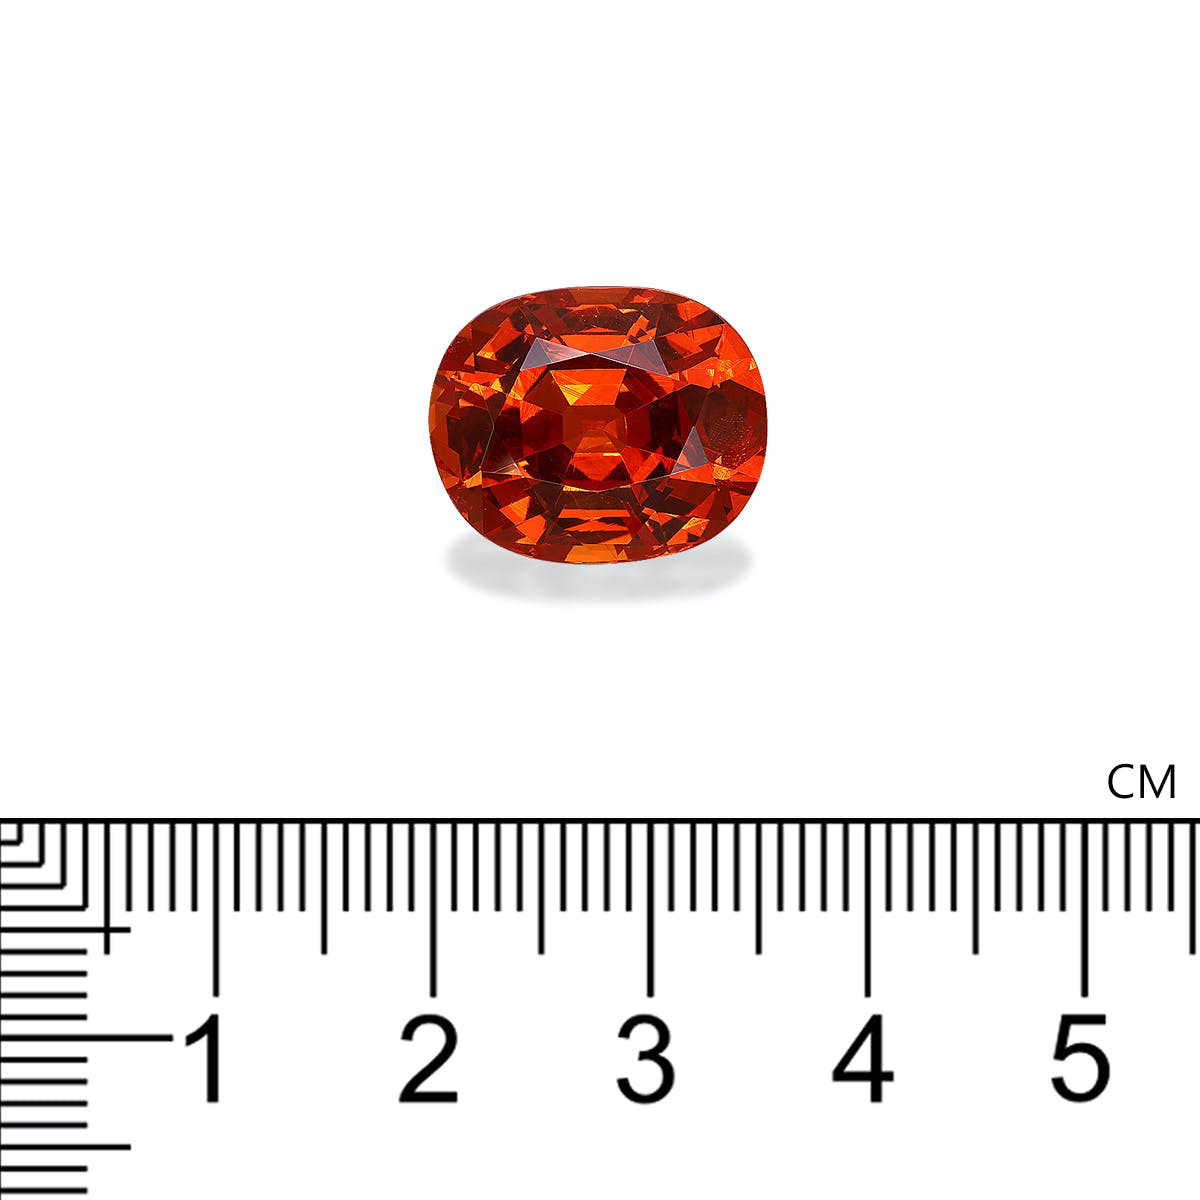 Picture of Mandarin Orange Spessartite 14.37ct - 15x13mm (ST1843)